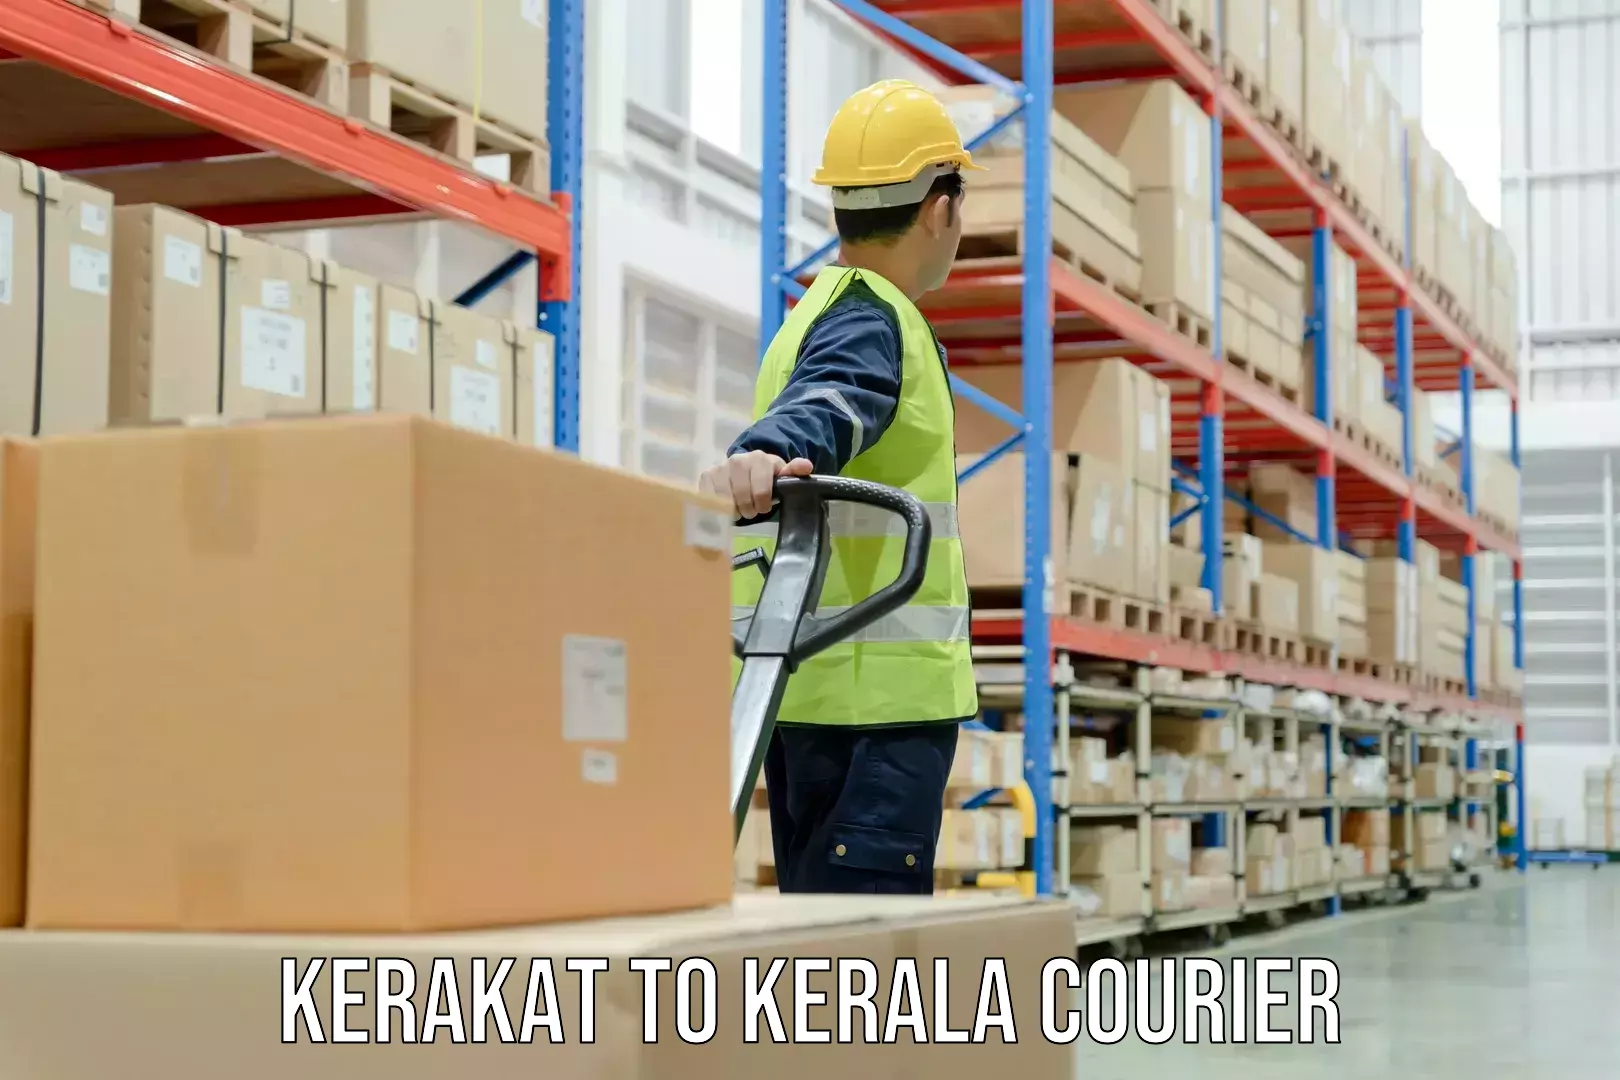 Package tracking Kerakat to Kakkur